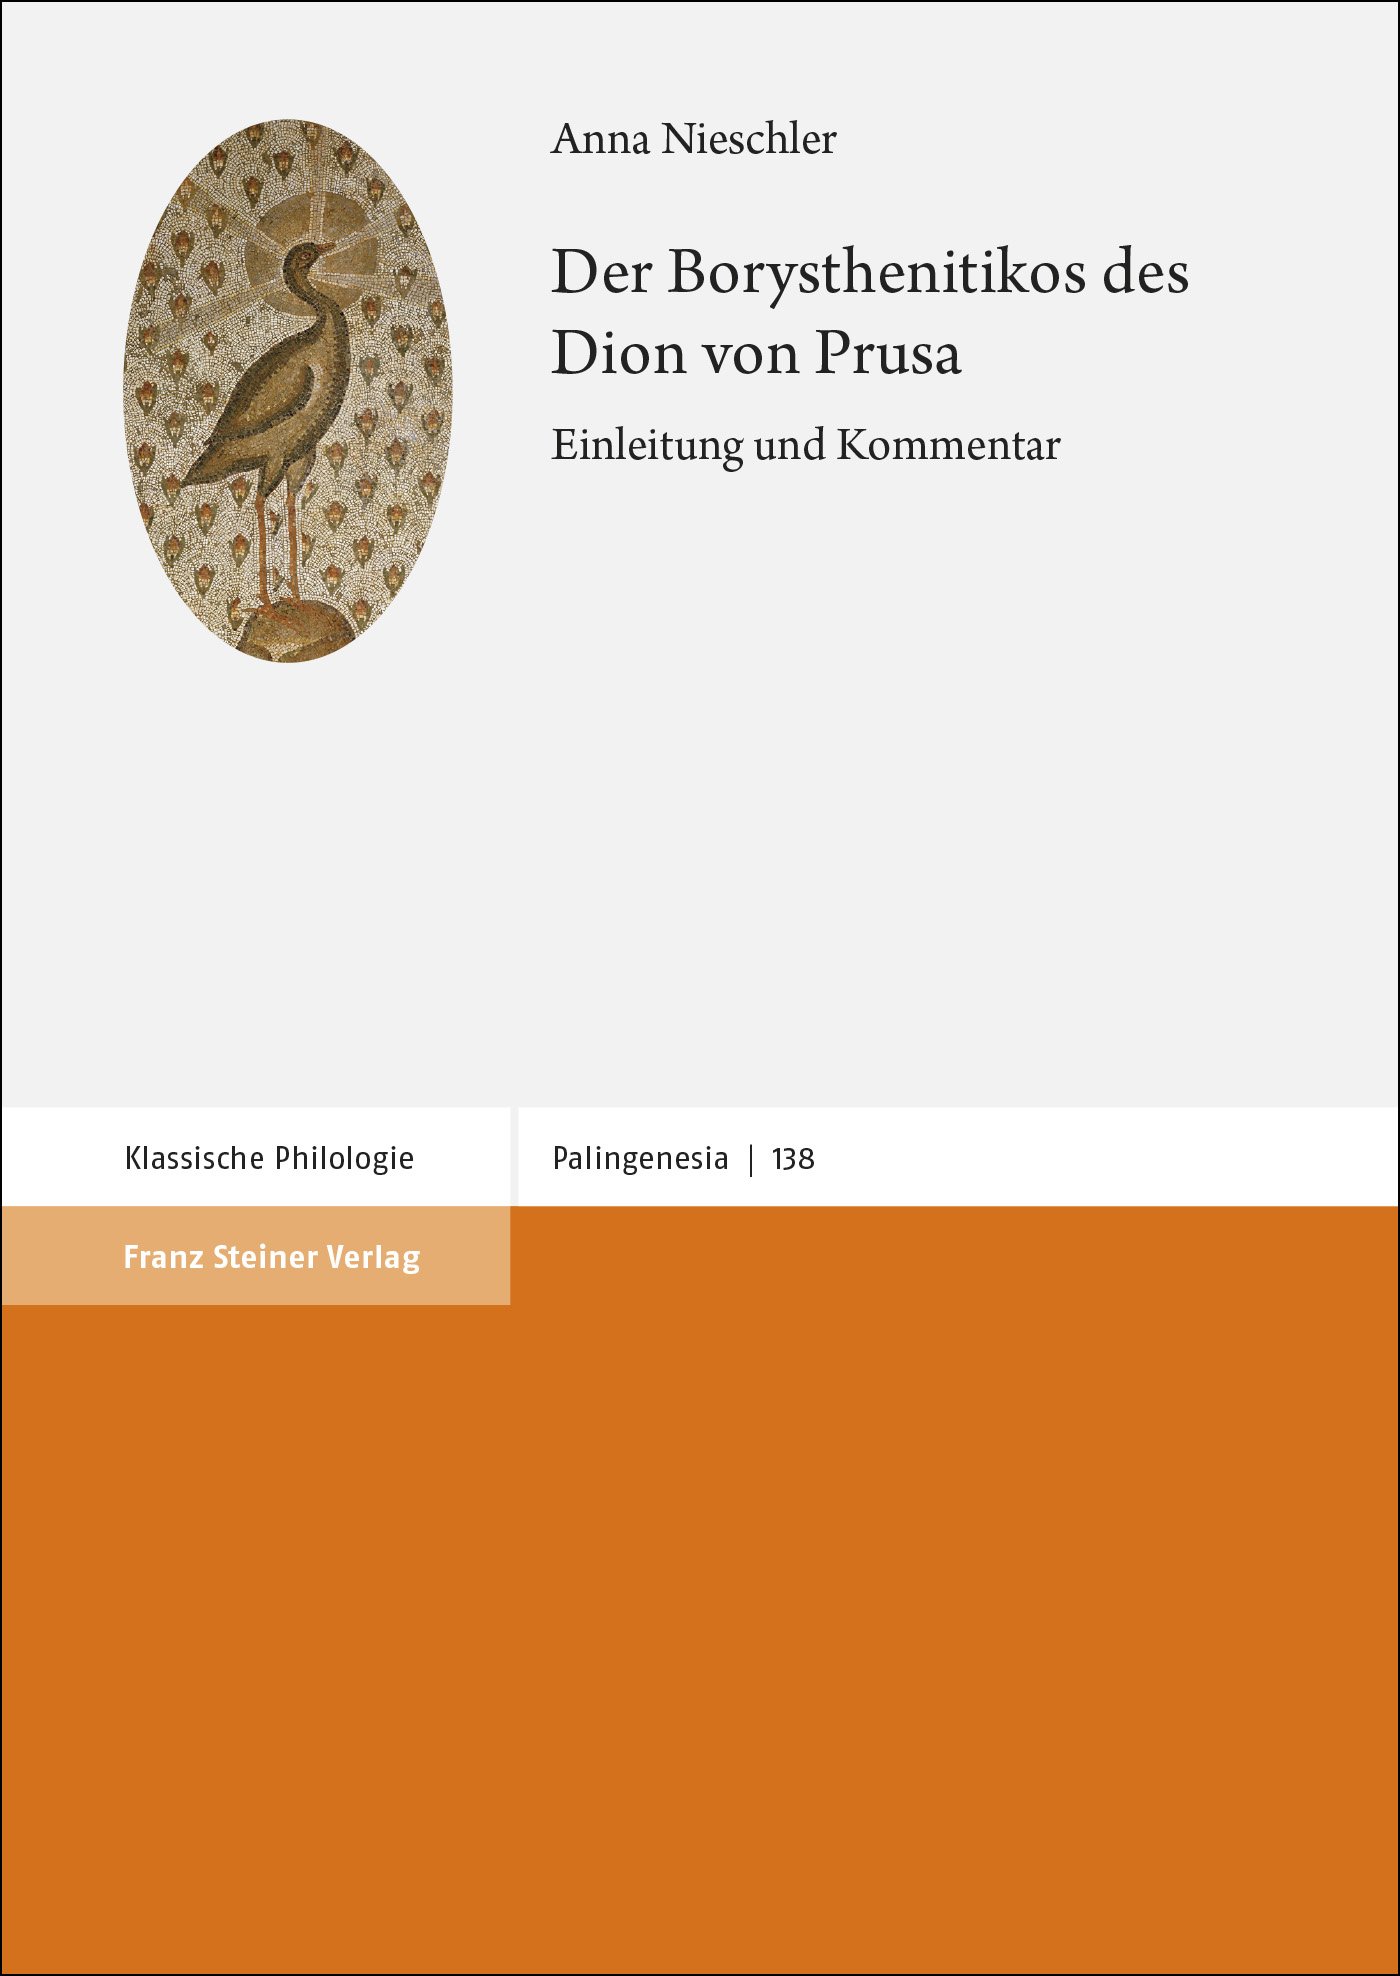 Der Borysthenitikos des Dion von Prusa